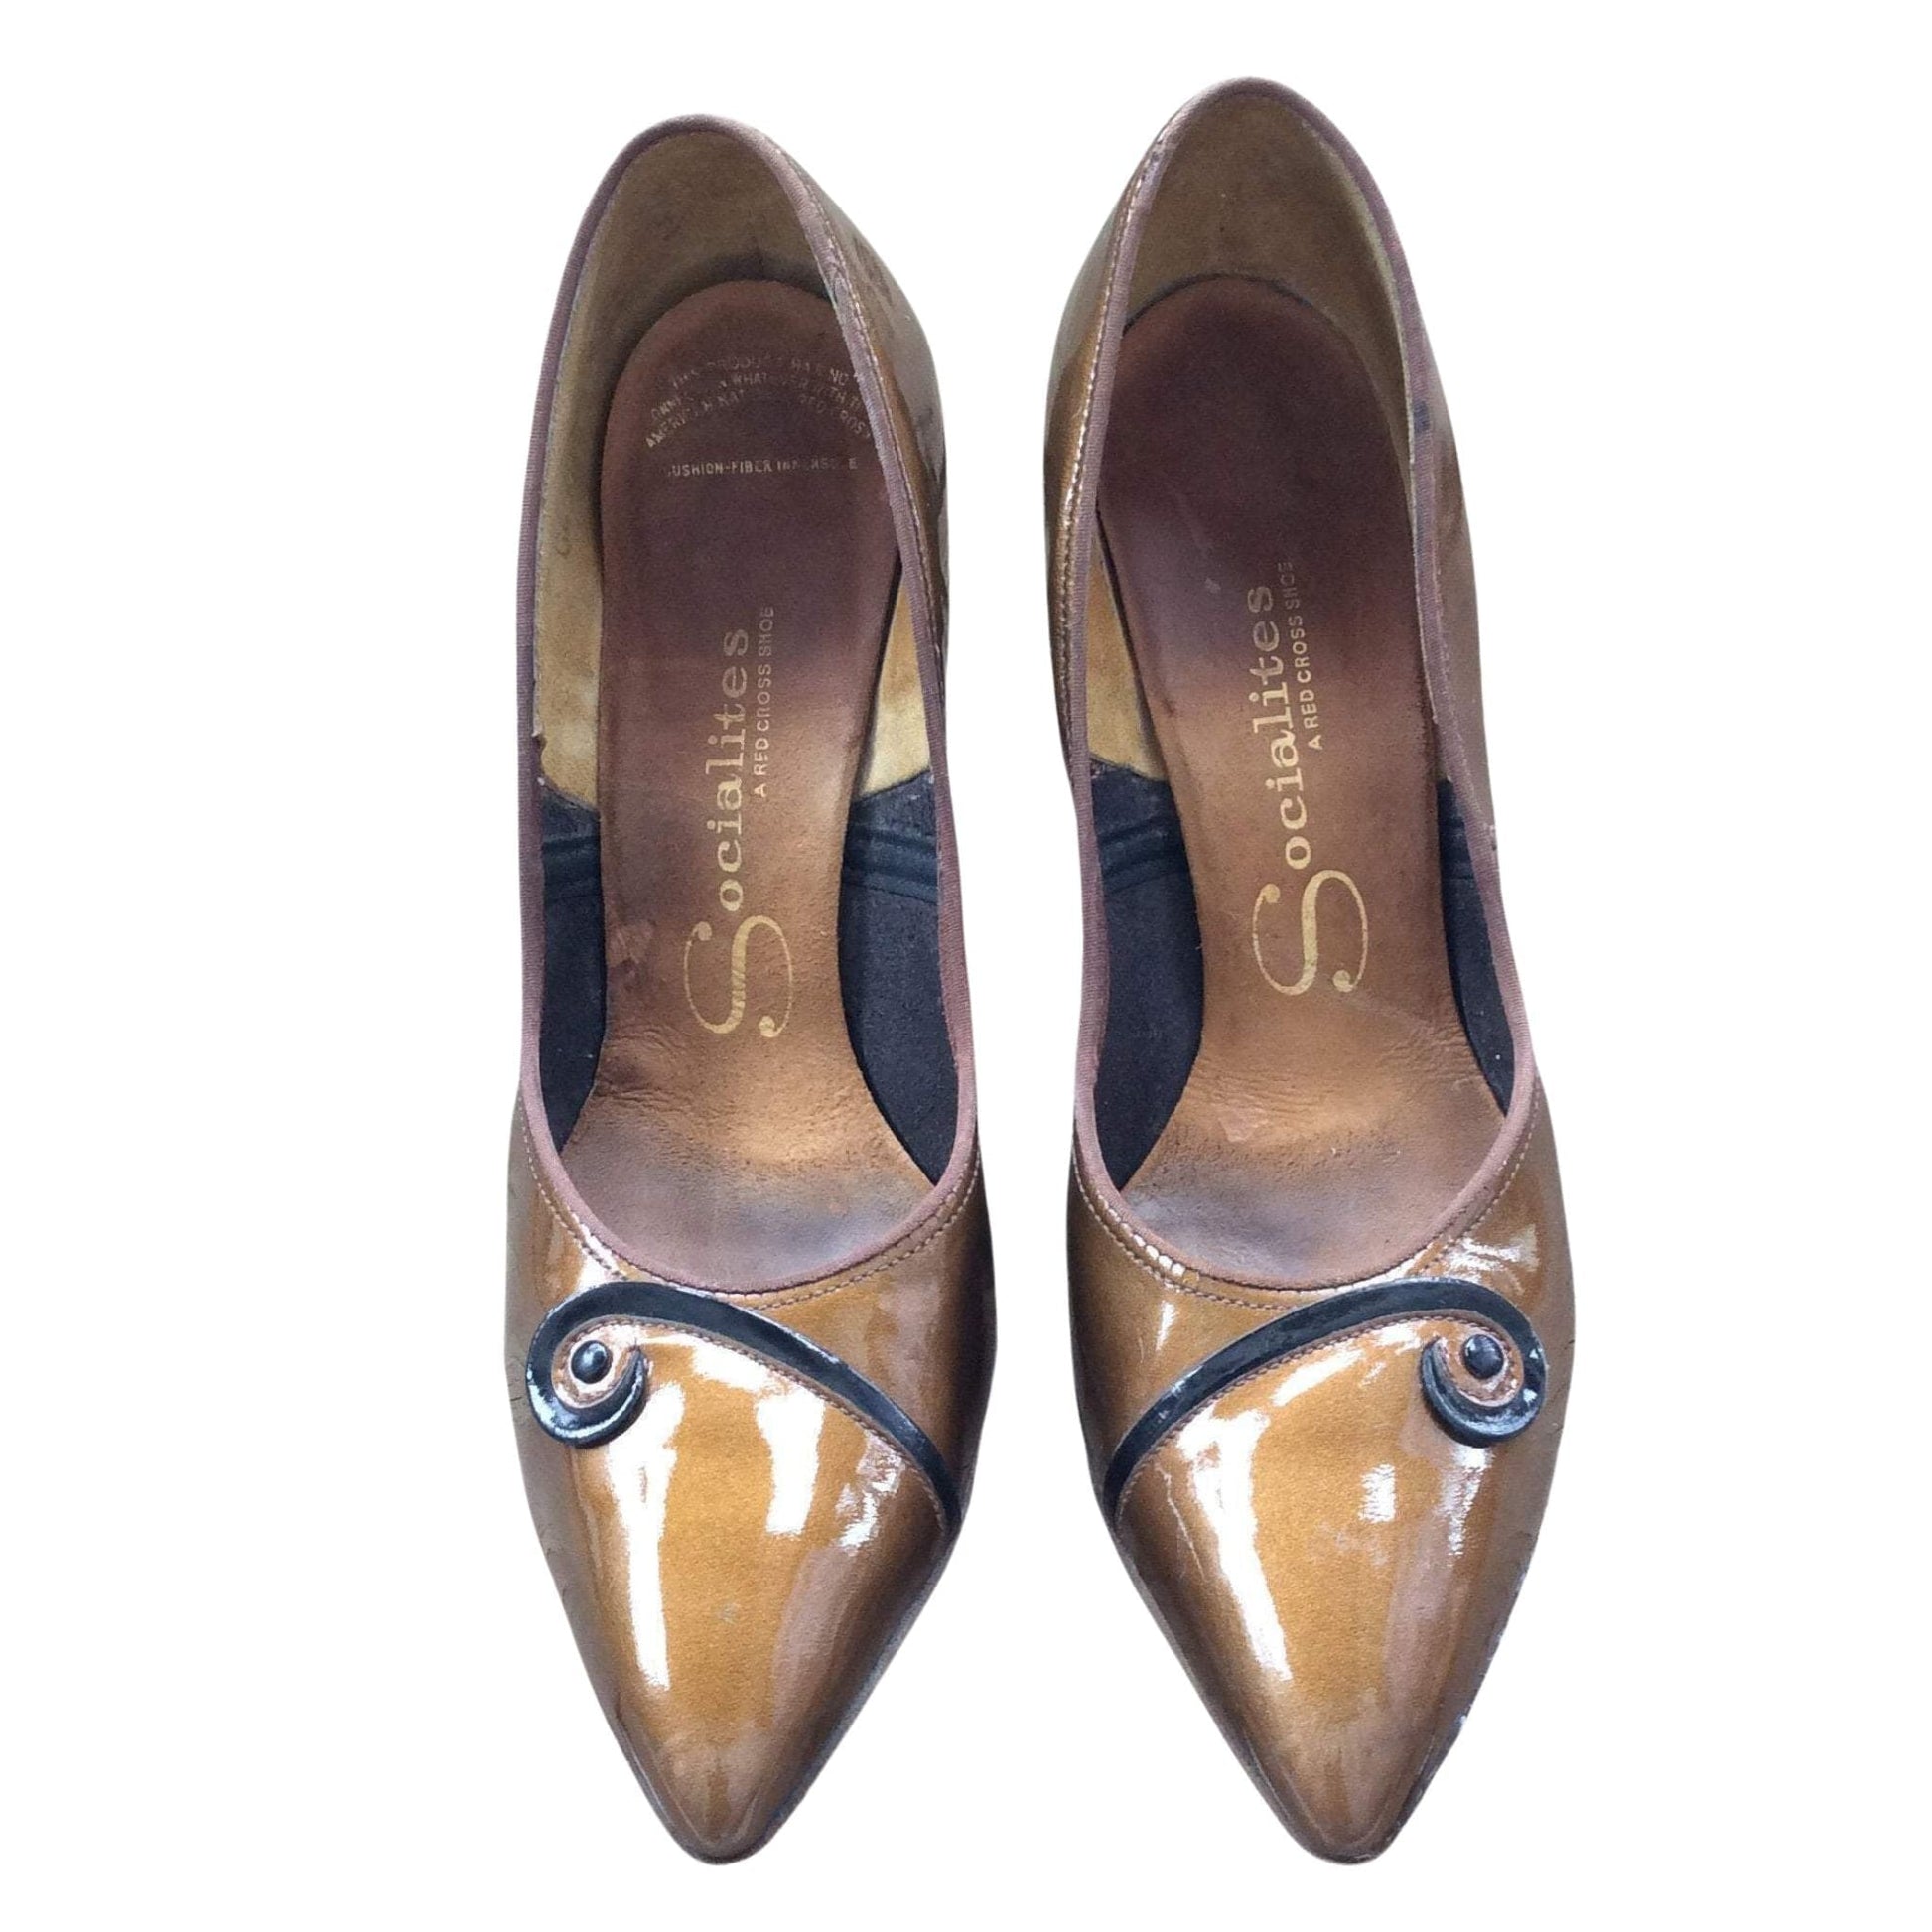 Brown Pin-up Heels 6.5 / Brown / Vintage - 1950s